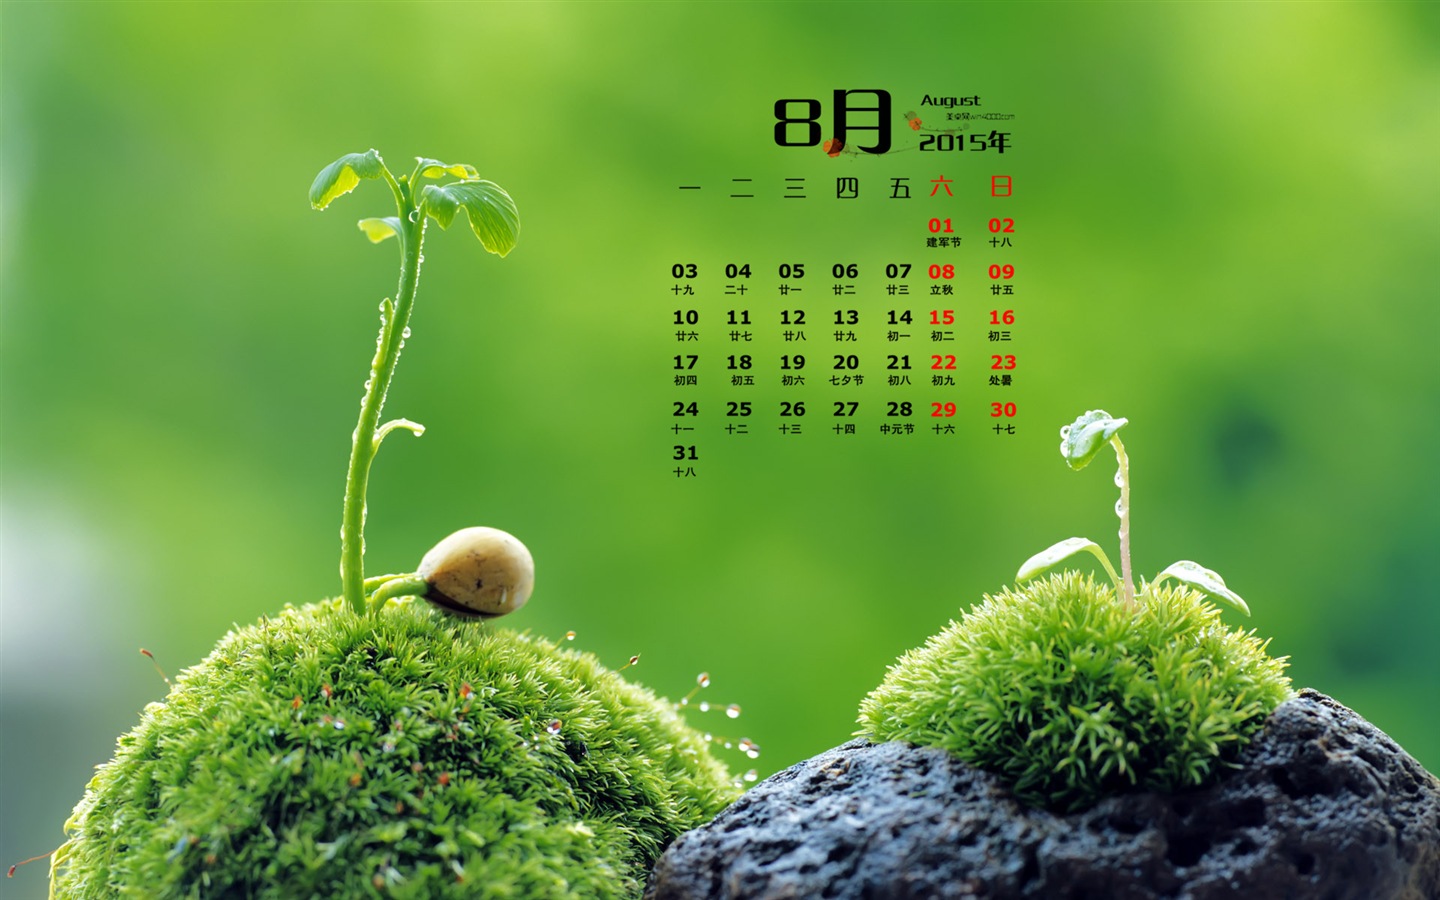 08 2015 fondos de escritorio calendario (1) #16 - 1440x900